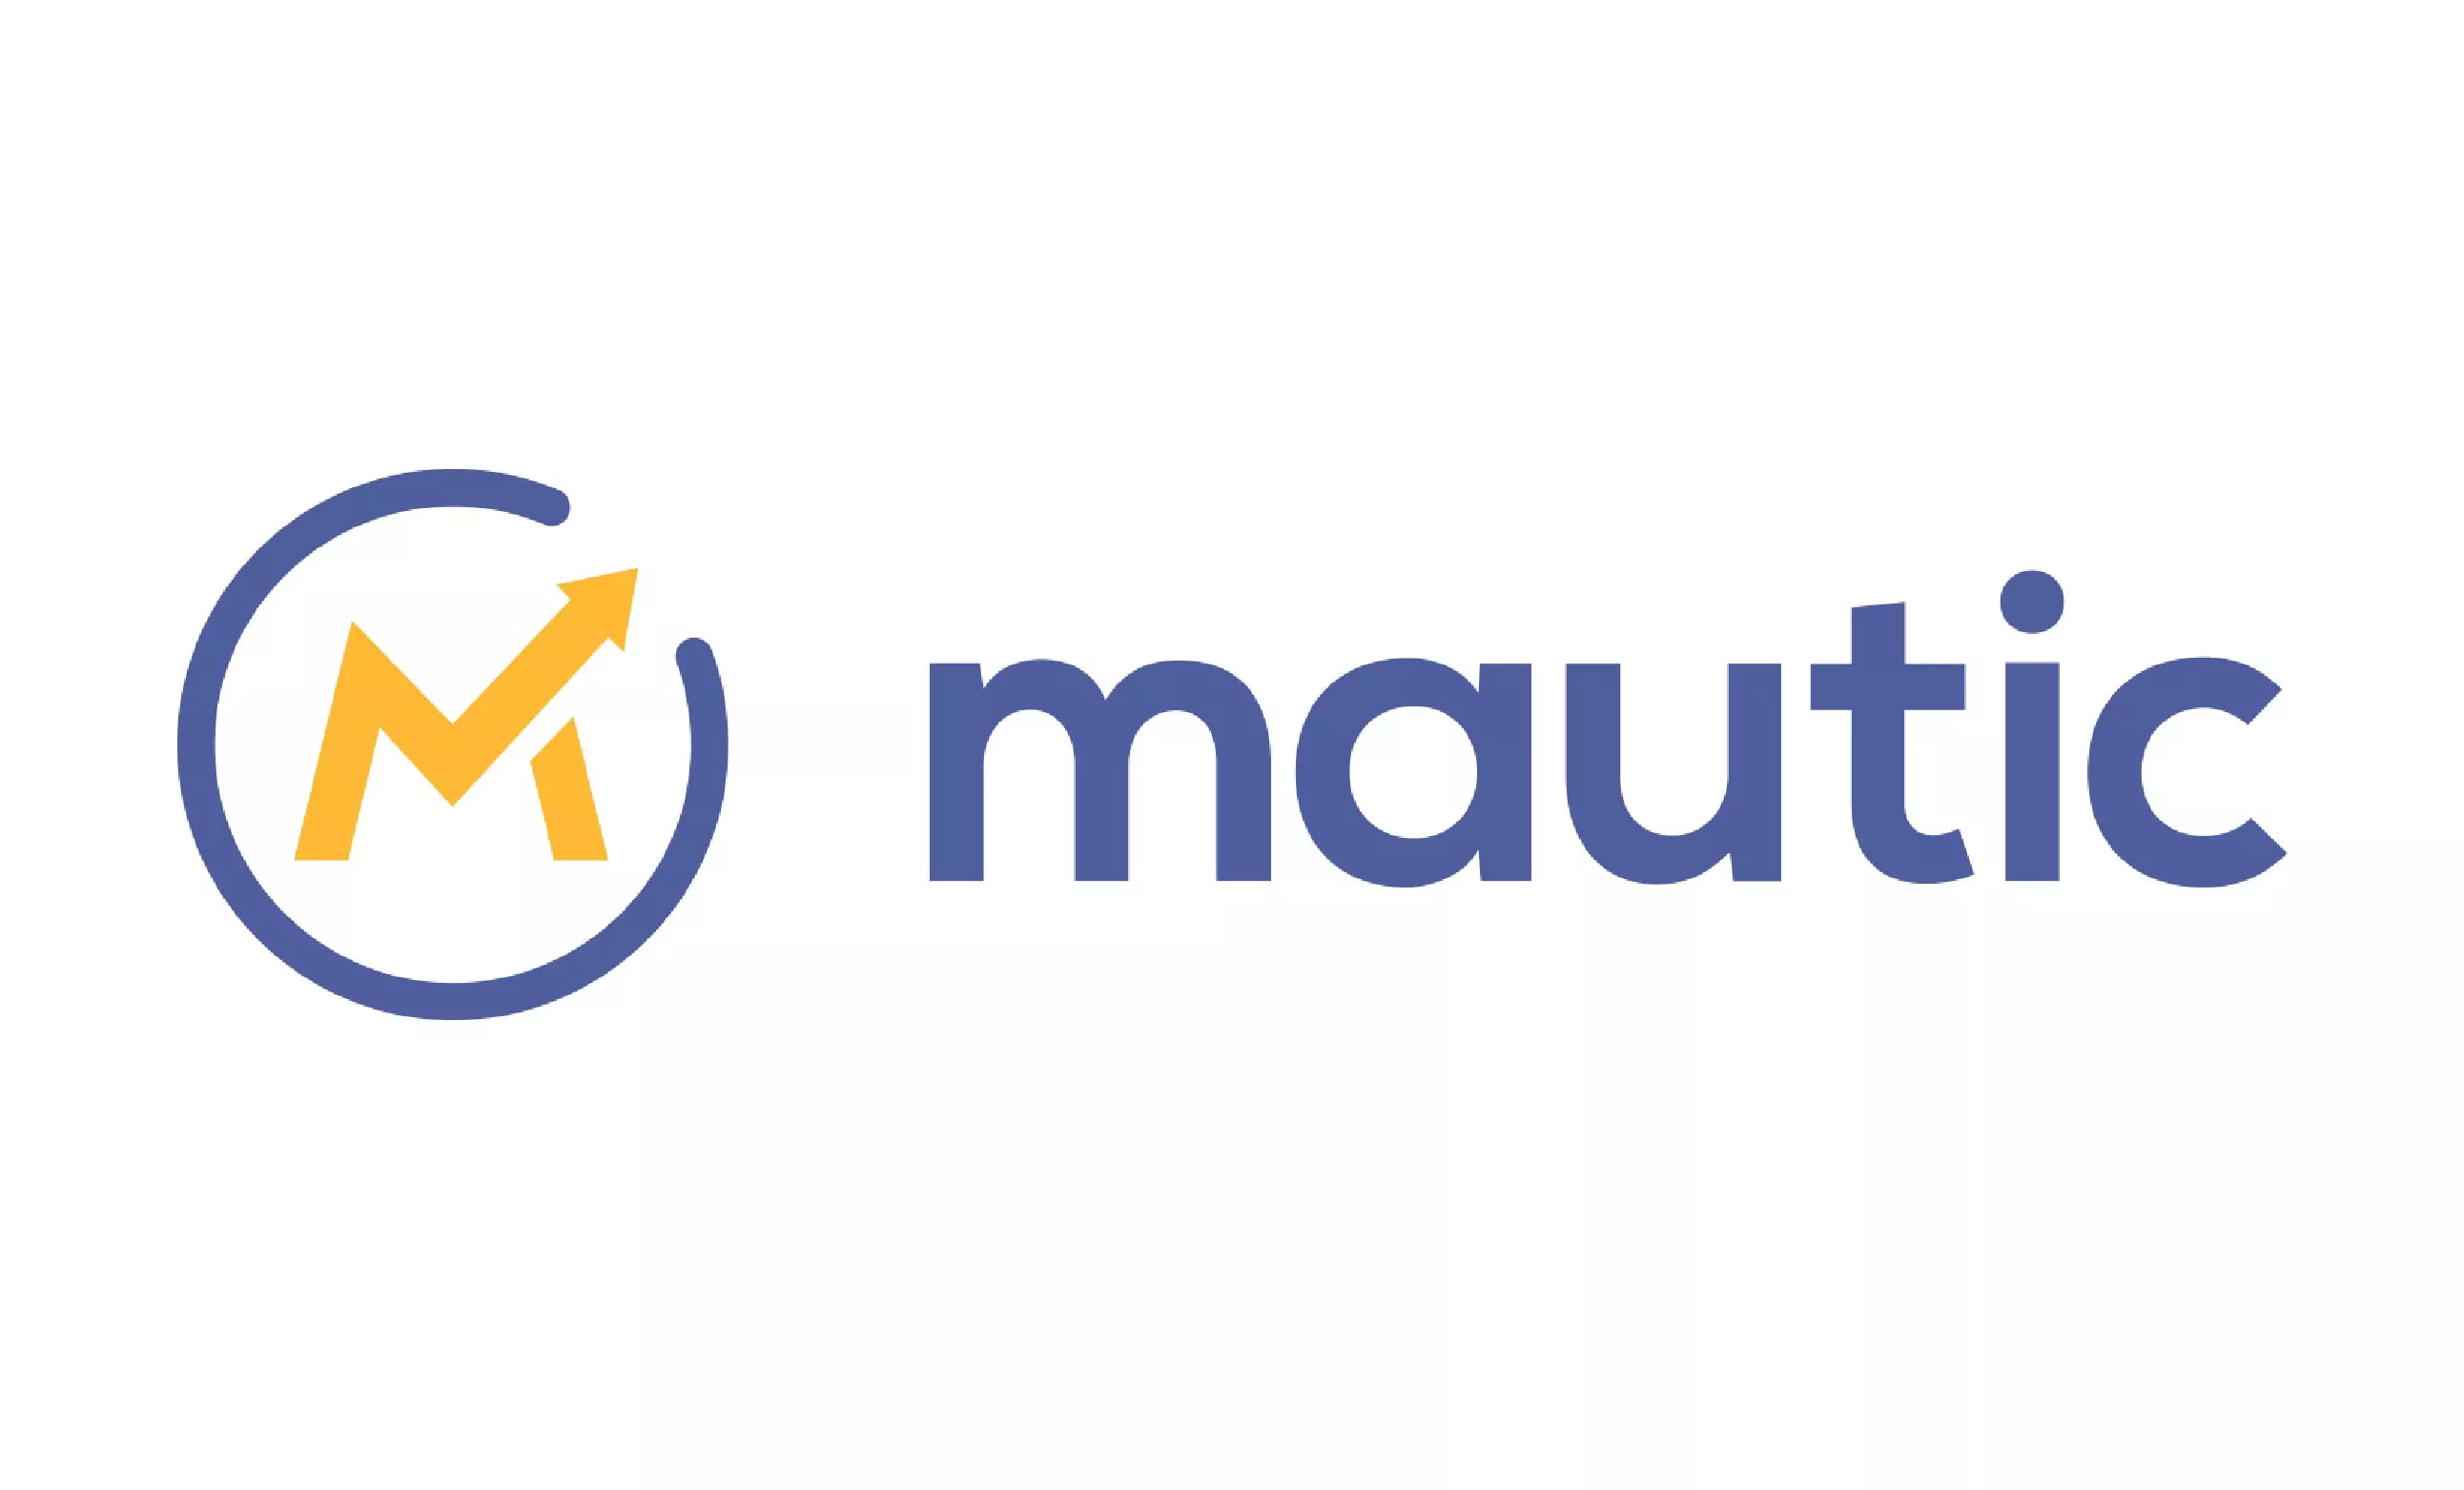 mautic-logo